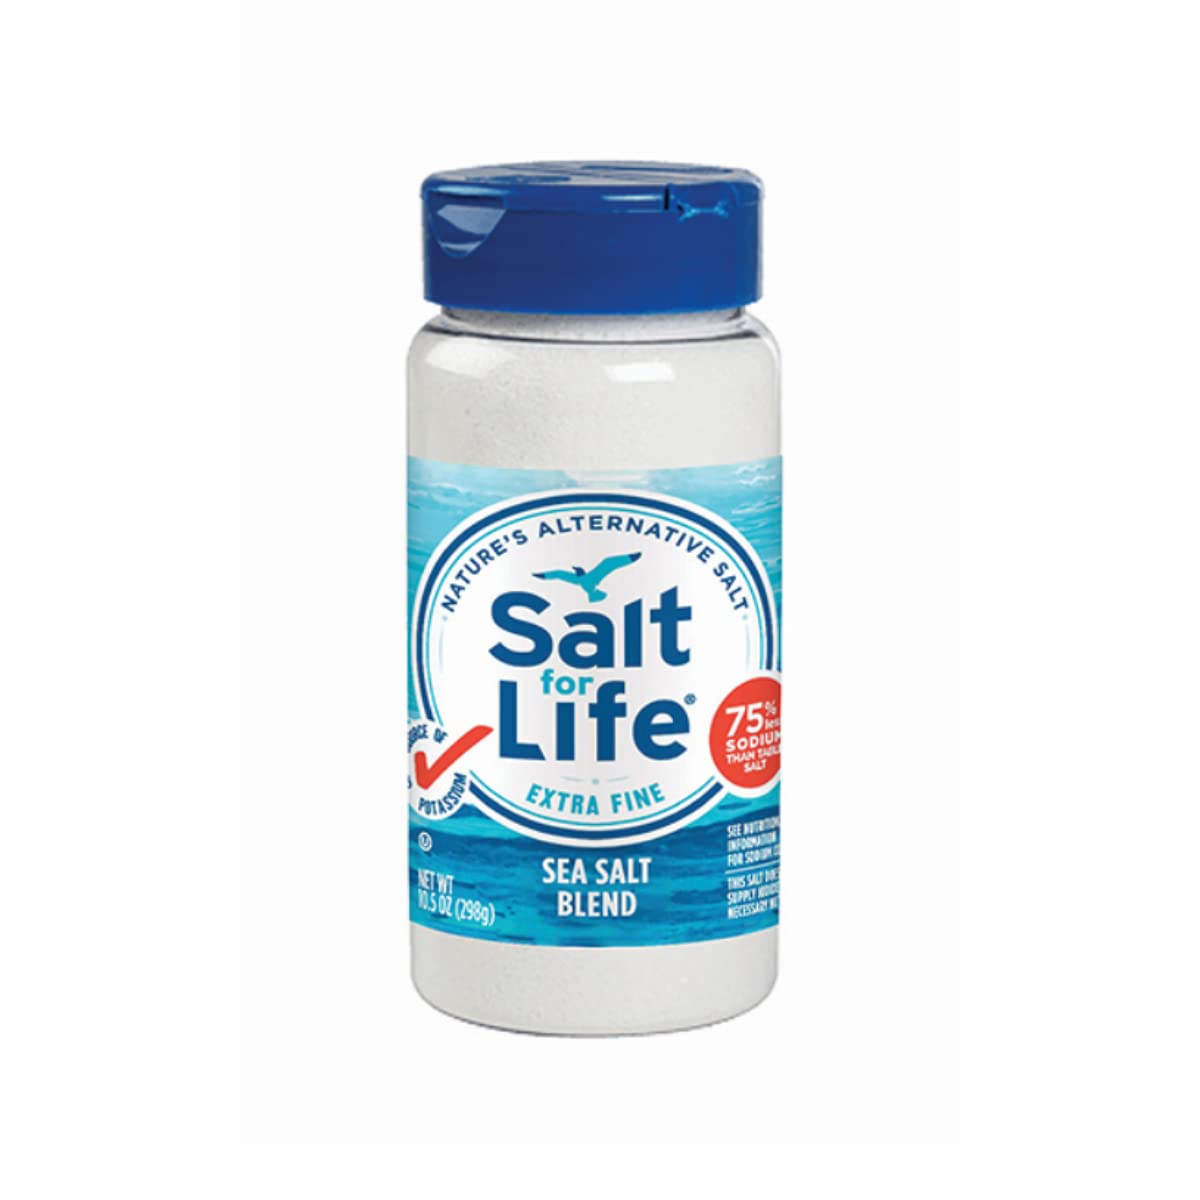 Salt For Life Salt Substitute - 10.5 oz. - Tasty Low Sodium Salt